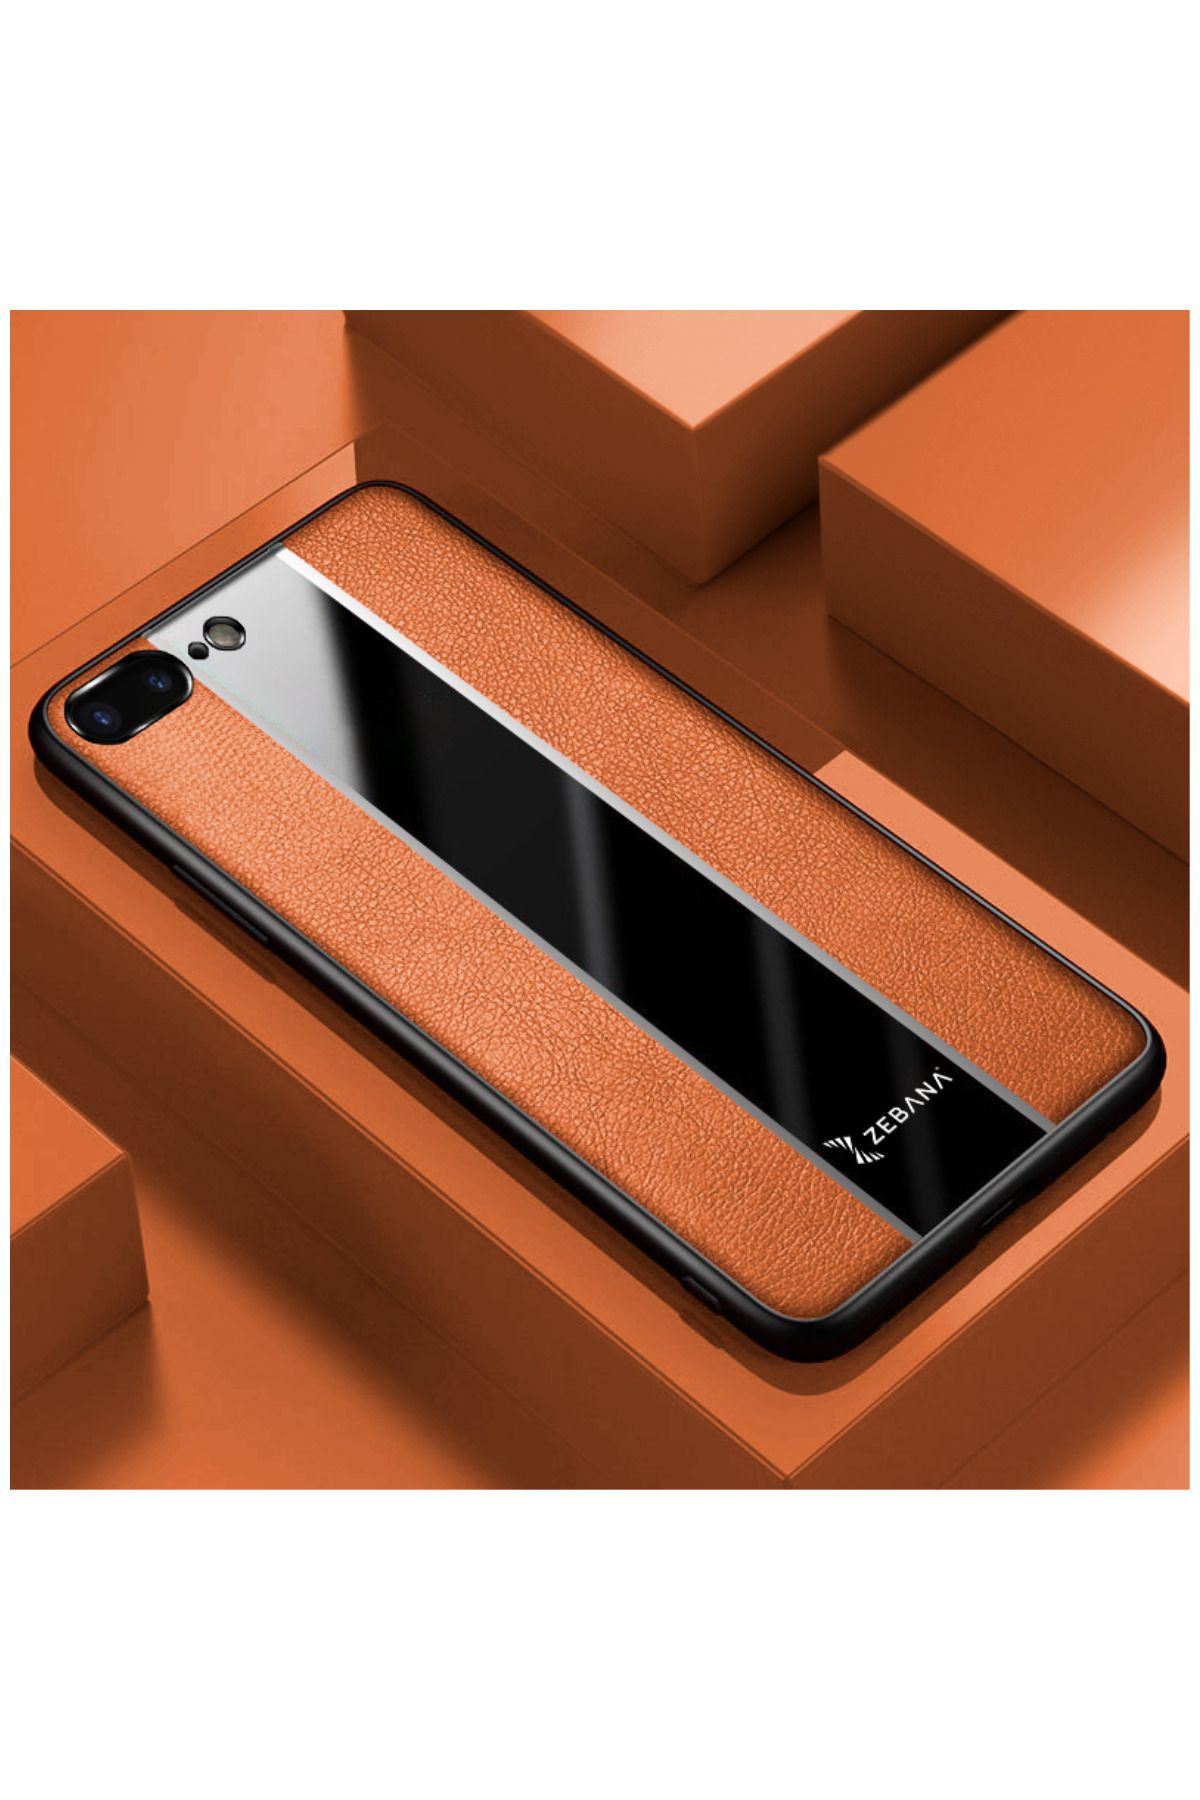 Dara Aksesuar Apple Iphone 8 Plus Uyumlu Kılıf Zebana Premium Deri Kılıf Kahverengi